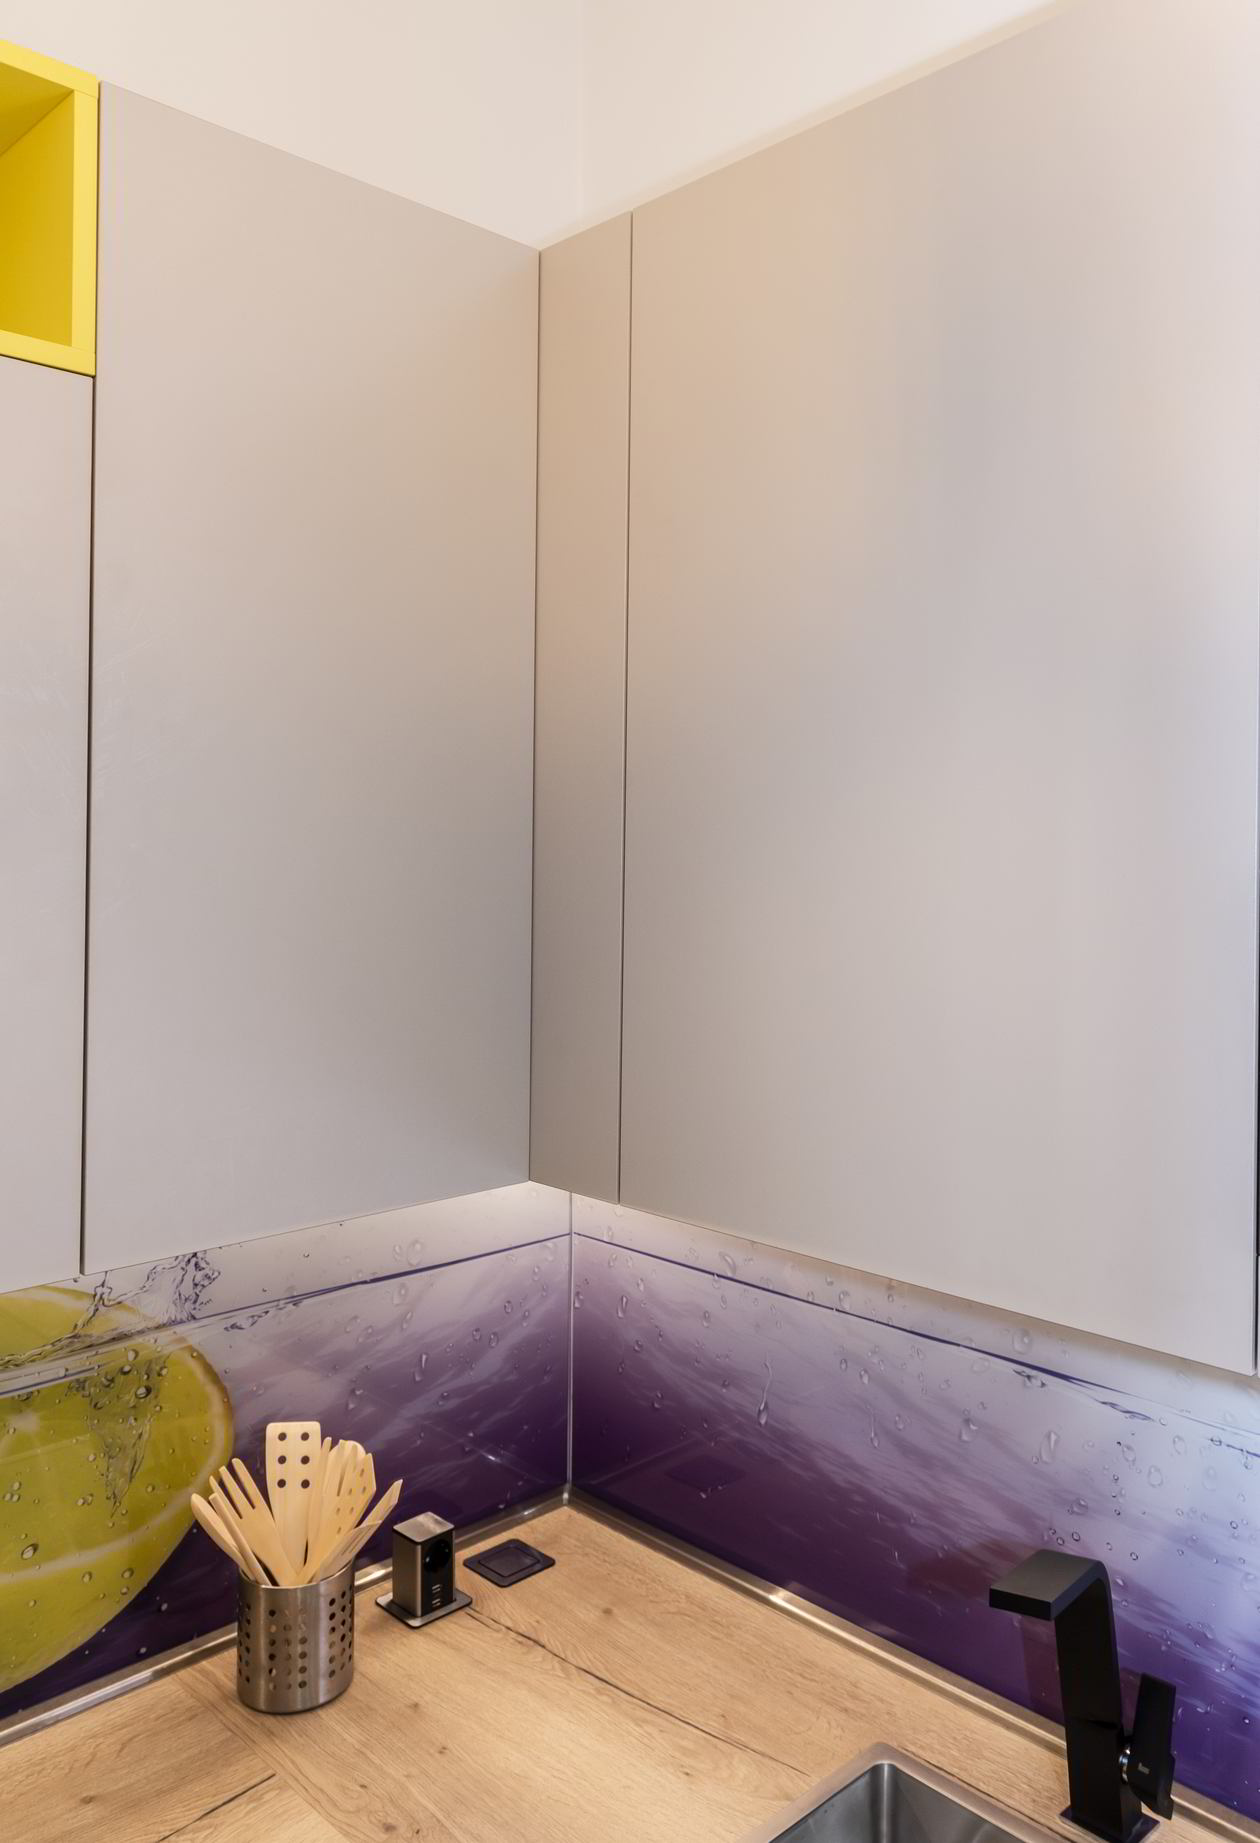 Proiect mobila Bucatarie pe trei pereti, cu masa integrata extractabila, expusa in Showroom YUKA, 5m², L 610 x H 240cm, realizat 19 Martie 2018 COD.4178